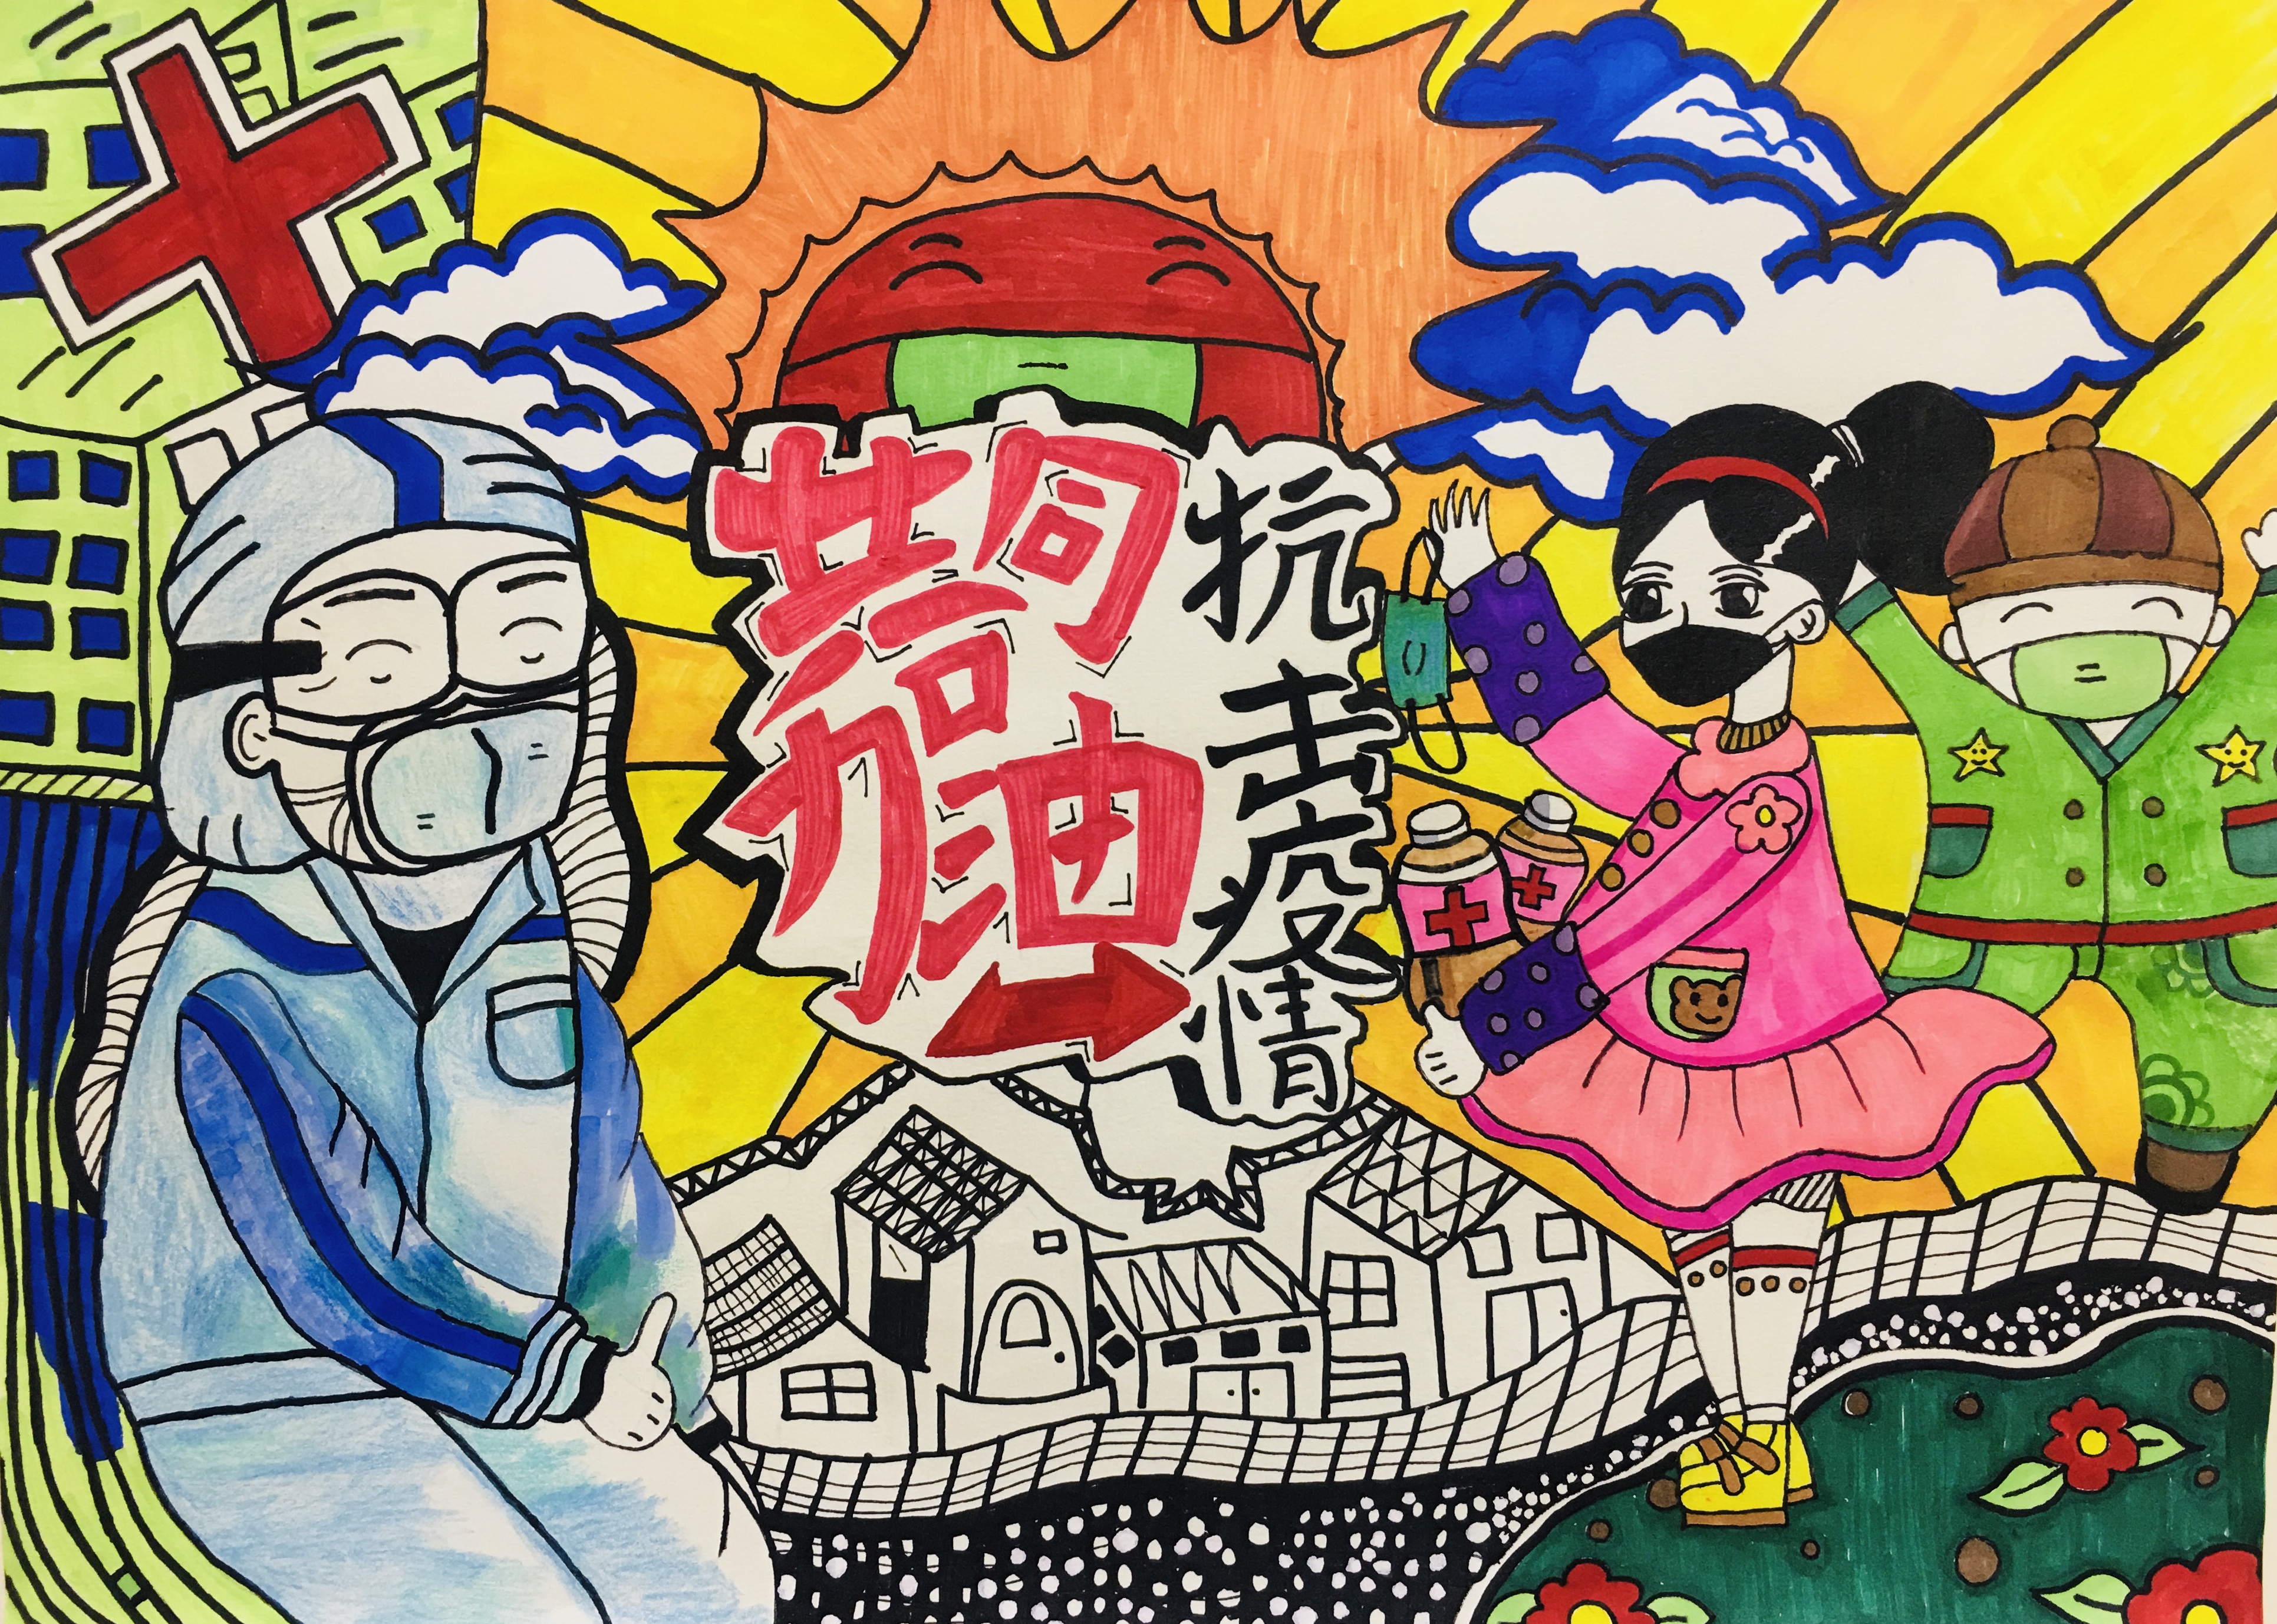 用画笔致敬英雄!郑州高新区实验小学书画作品传递正能量